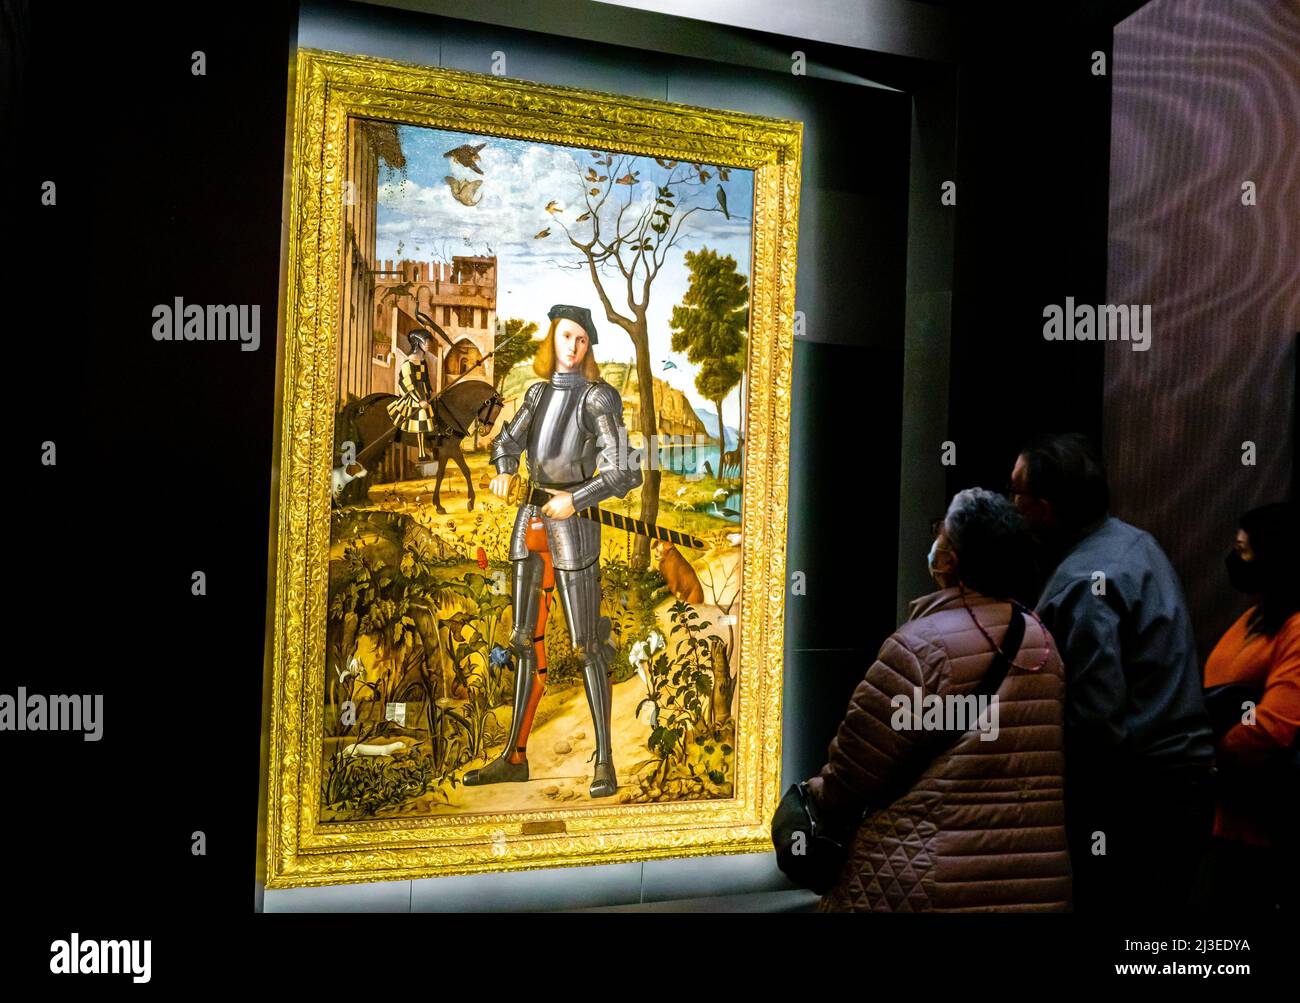 Visiteurs regardant Vittore Carpaccio - Jeune Chevalier dans un paysage - ca. 1505 - huile sur toile. Musée Thyssen Madrid, Espagne Banque D'Images